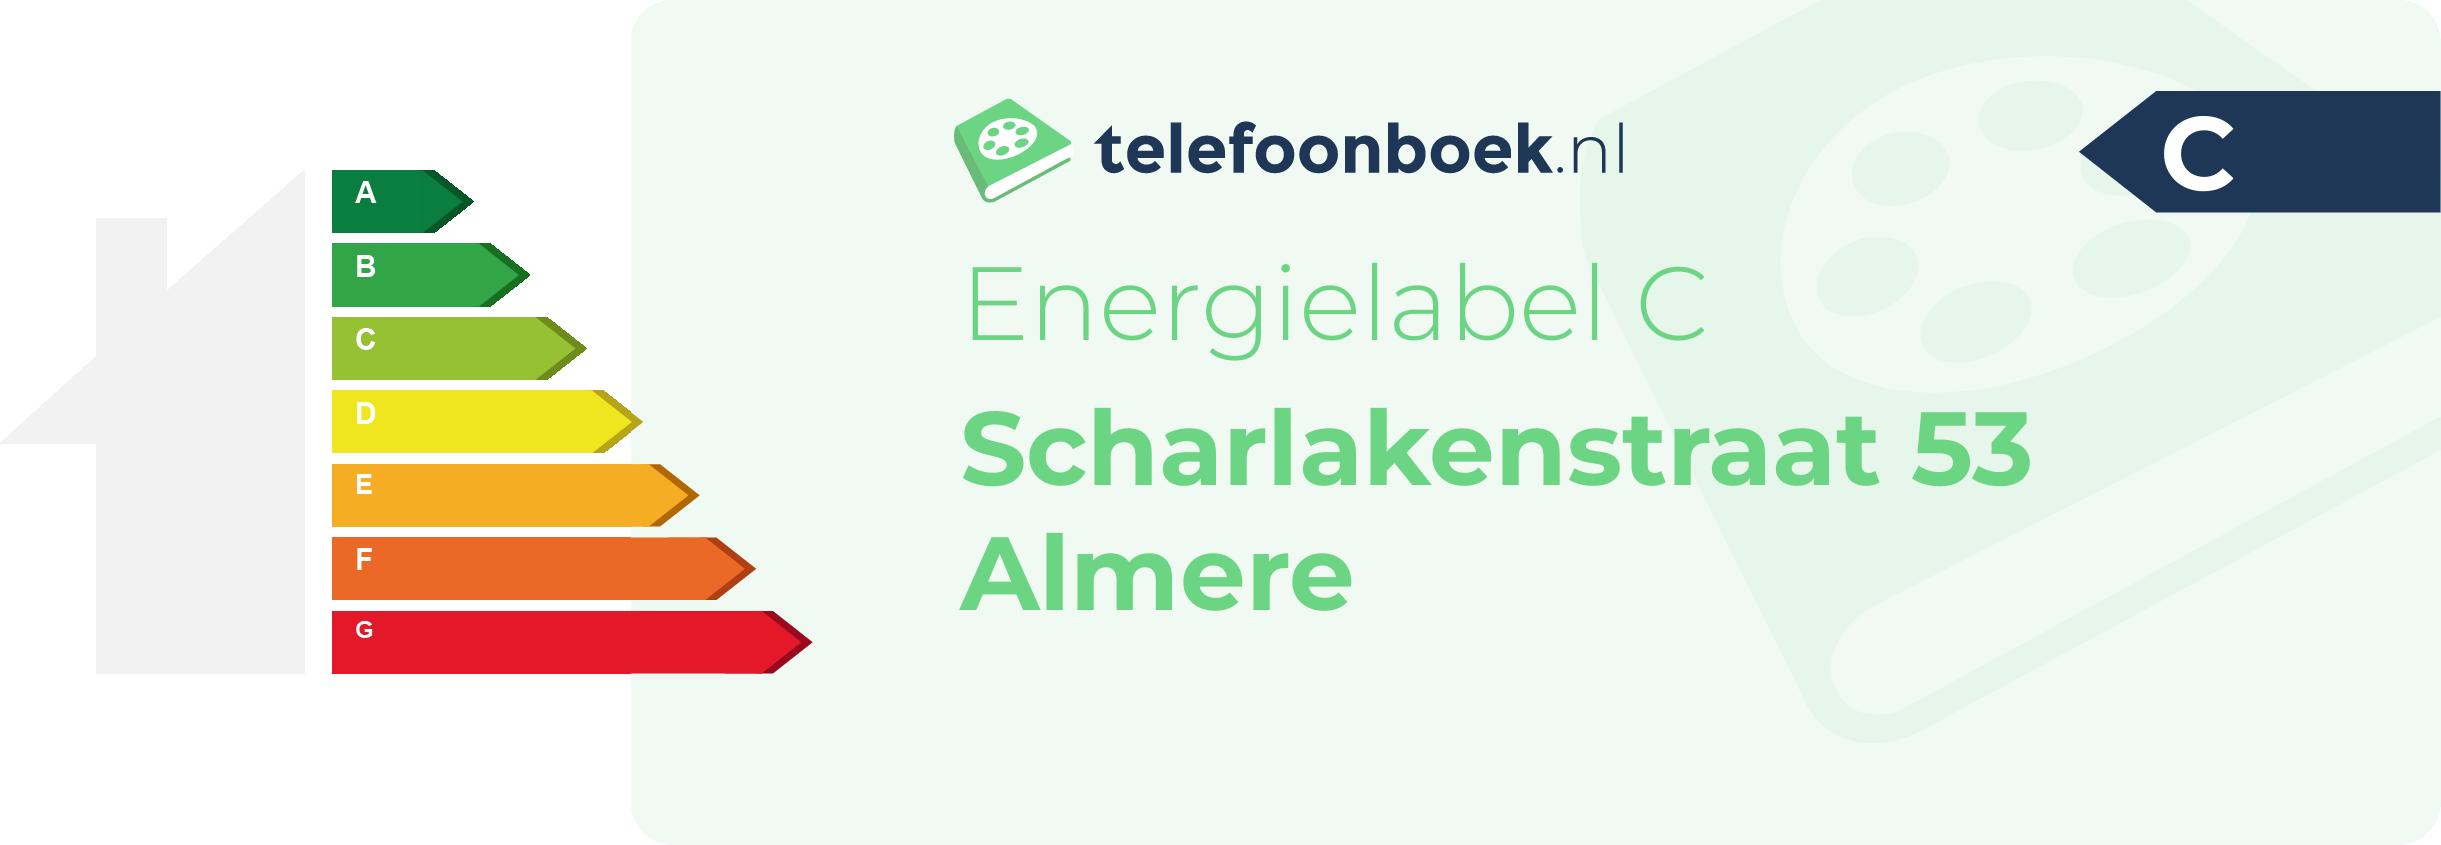 Energielabel Scharlakenstraat 53 Almere